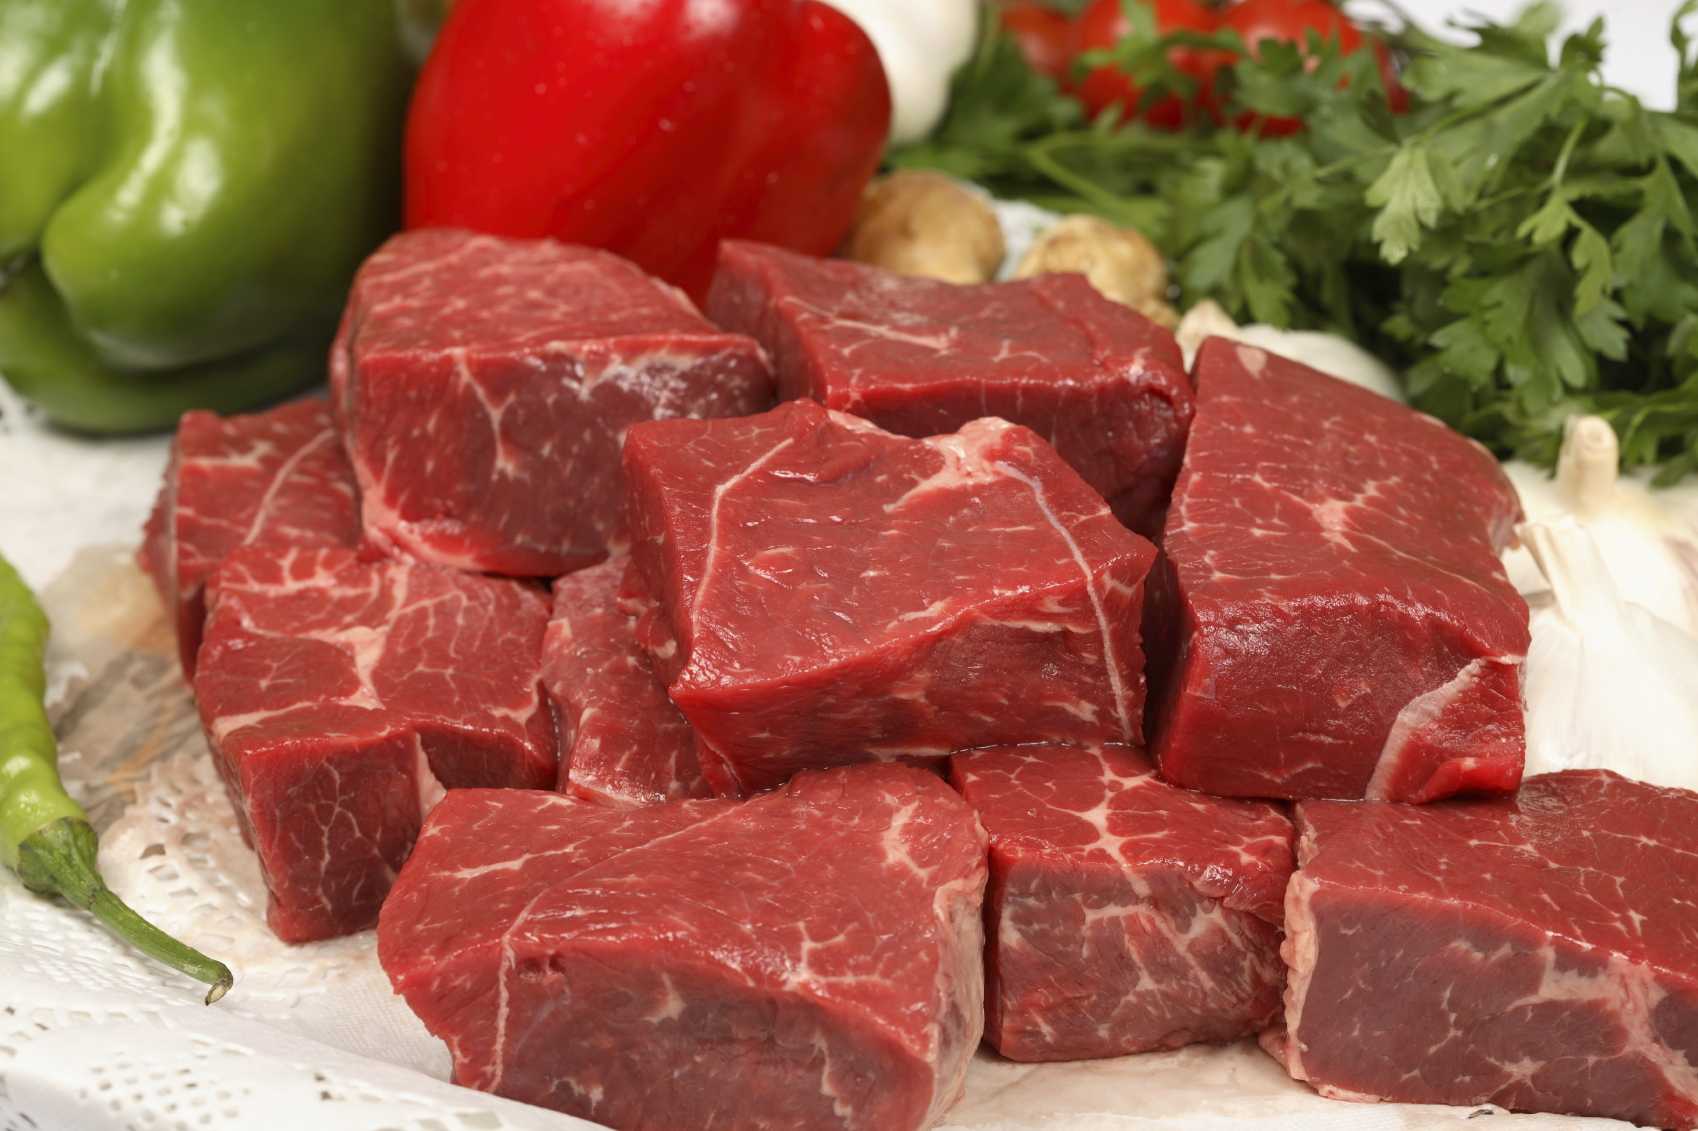 127573 127573 اللحوم الحمراء - أسباب تجبرك على منع كبار السن من تناول اللحوم الحمراء